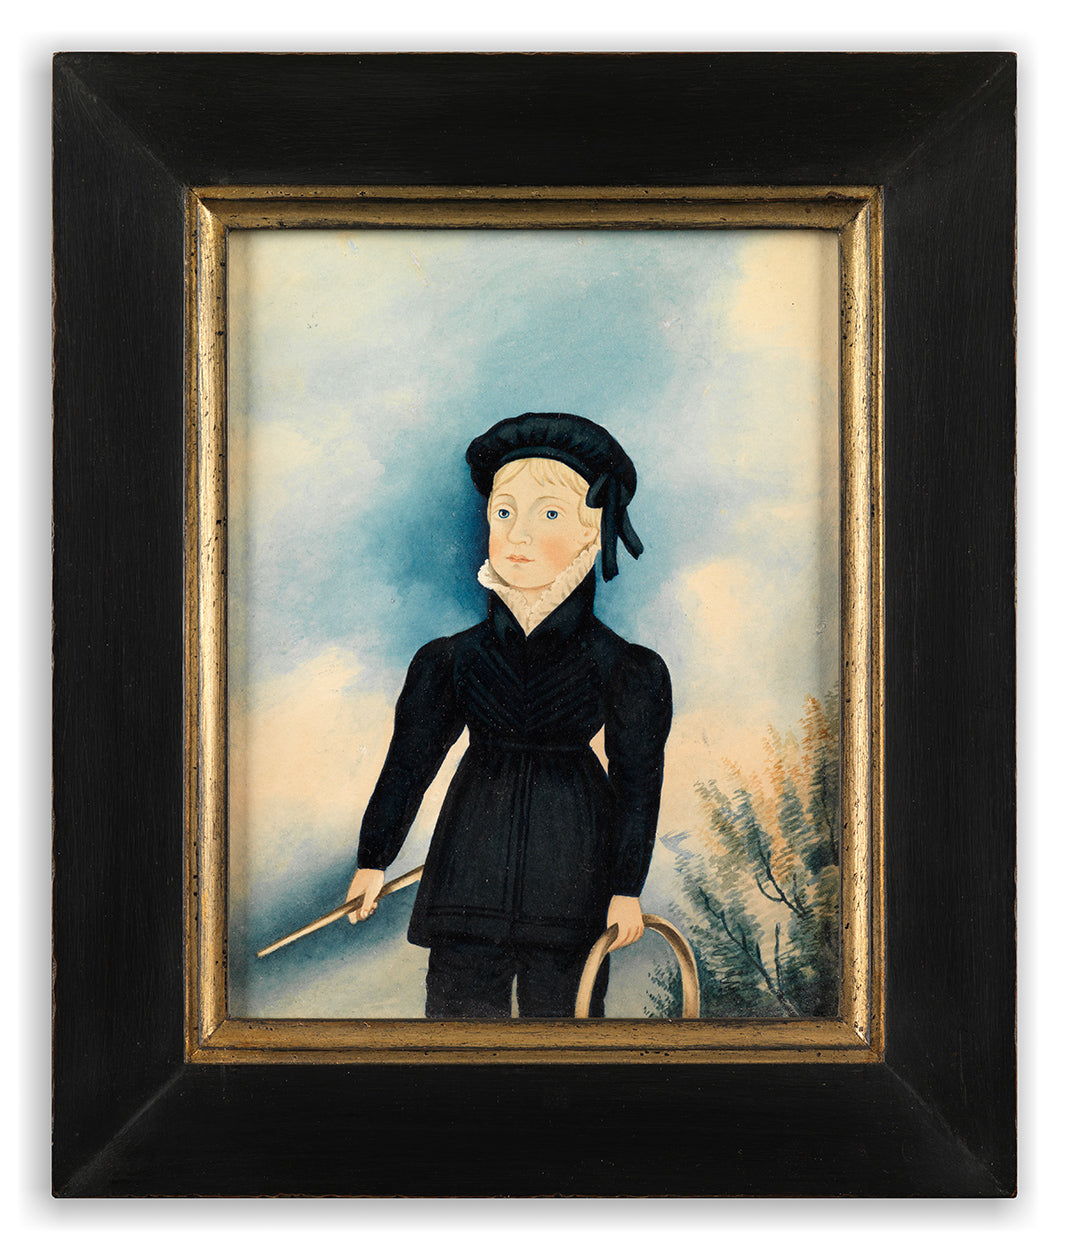 Bold Naïve Three-Quarter Length Folk Art Portrait of a Boy